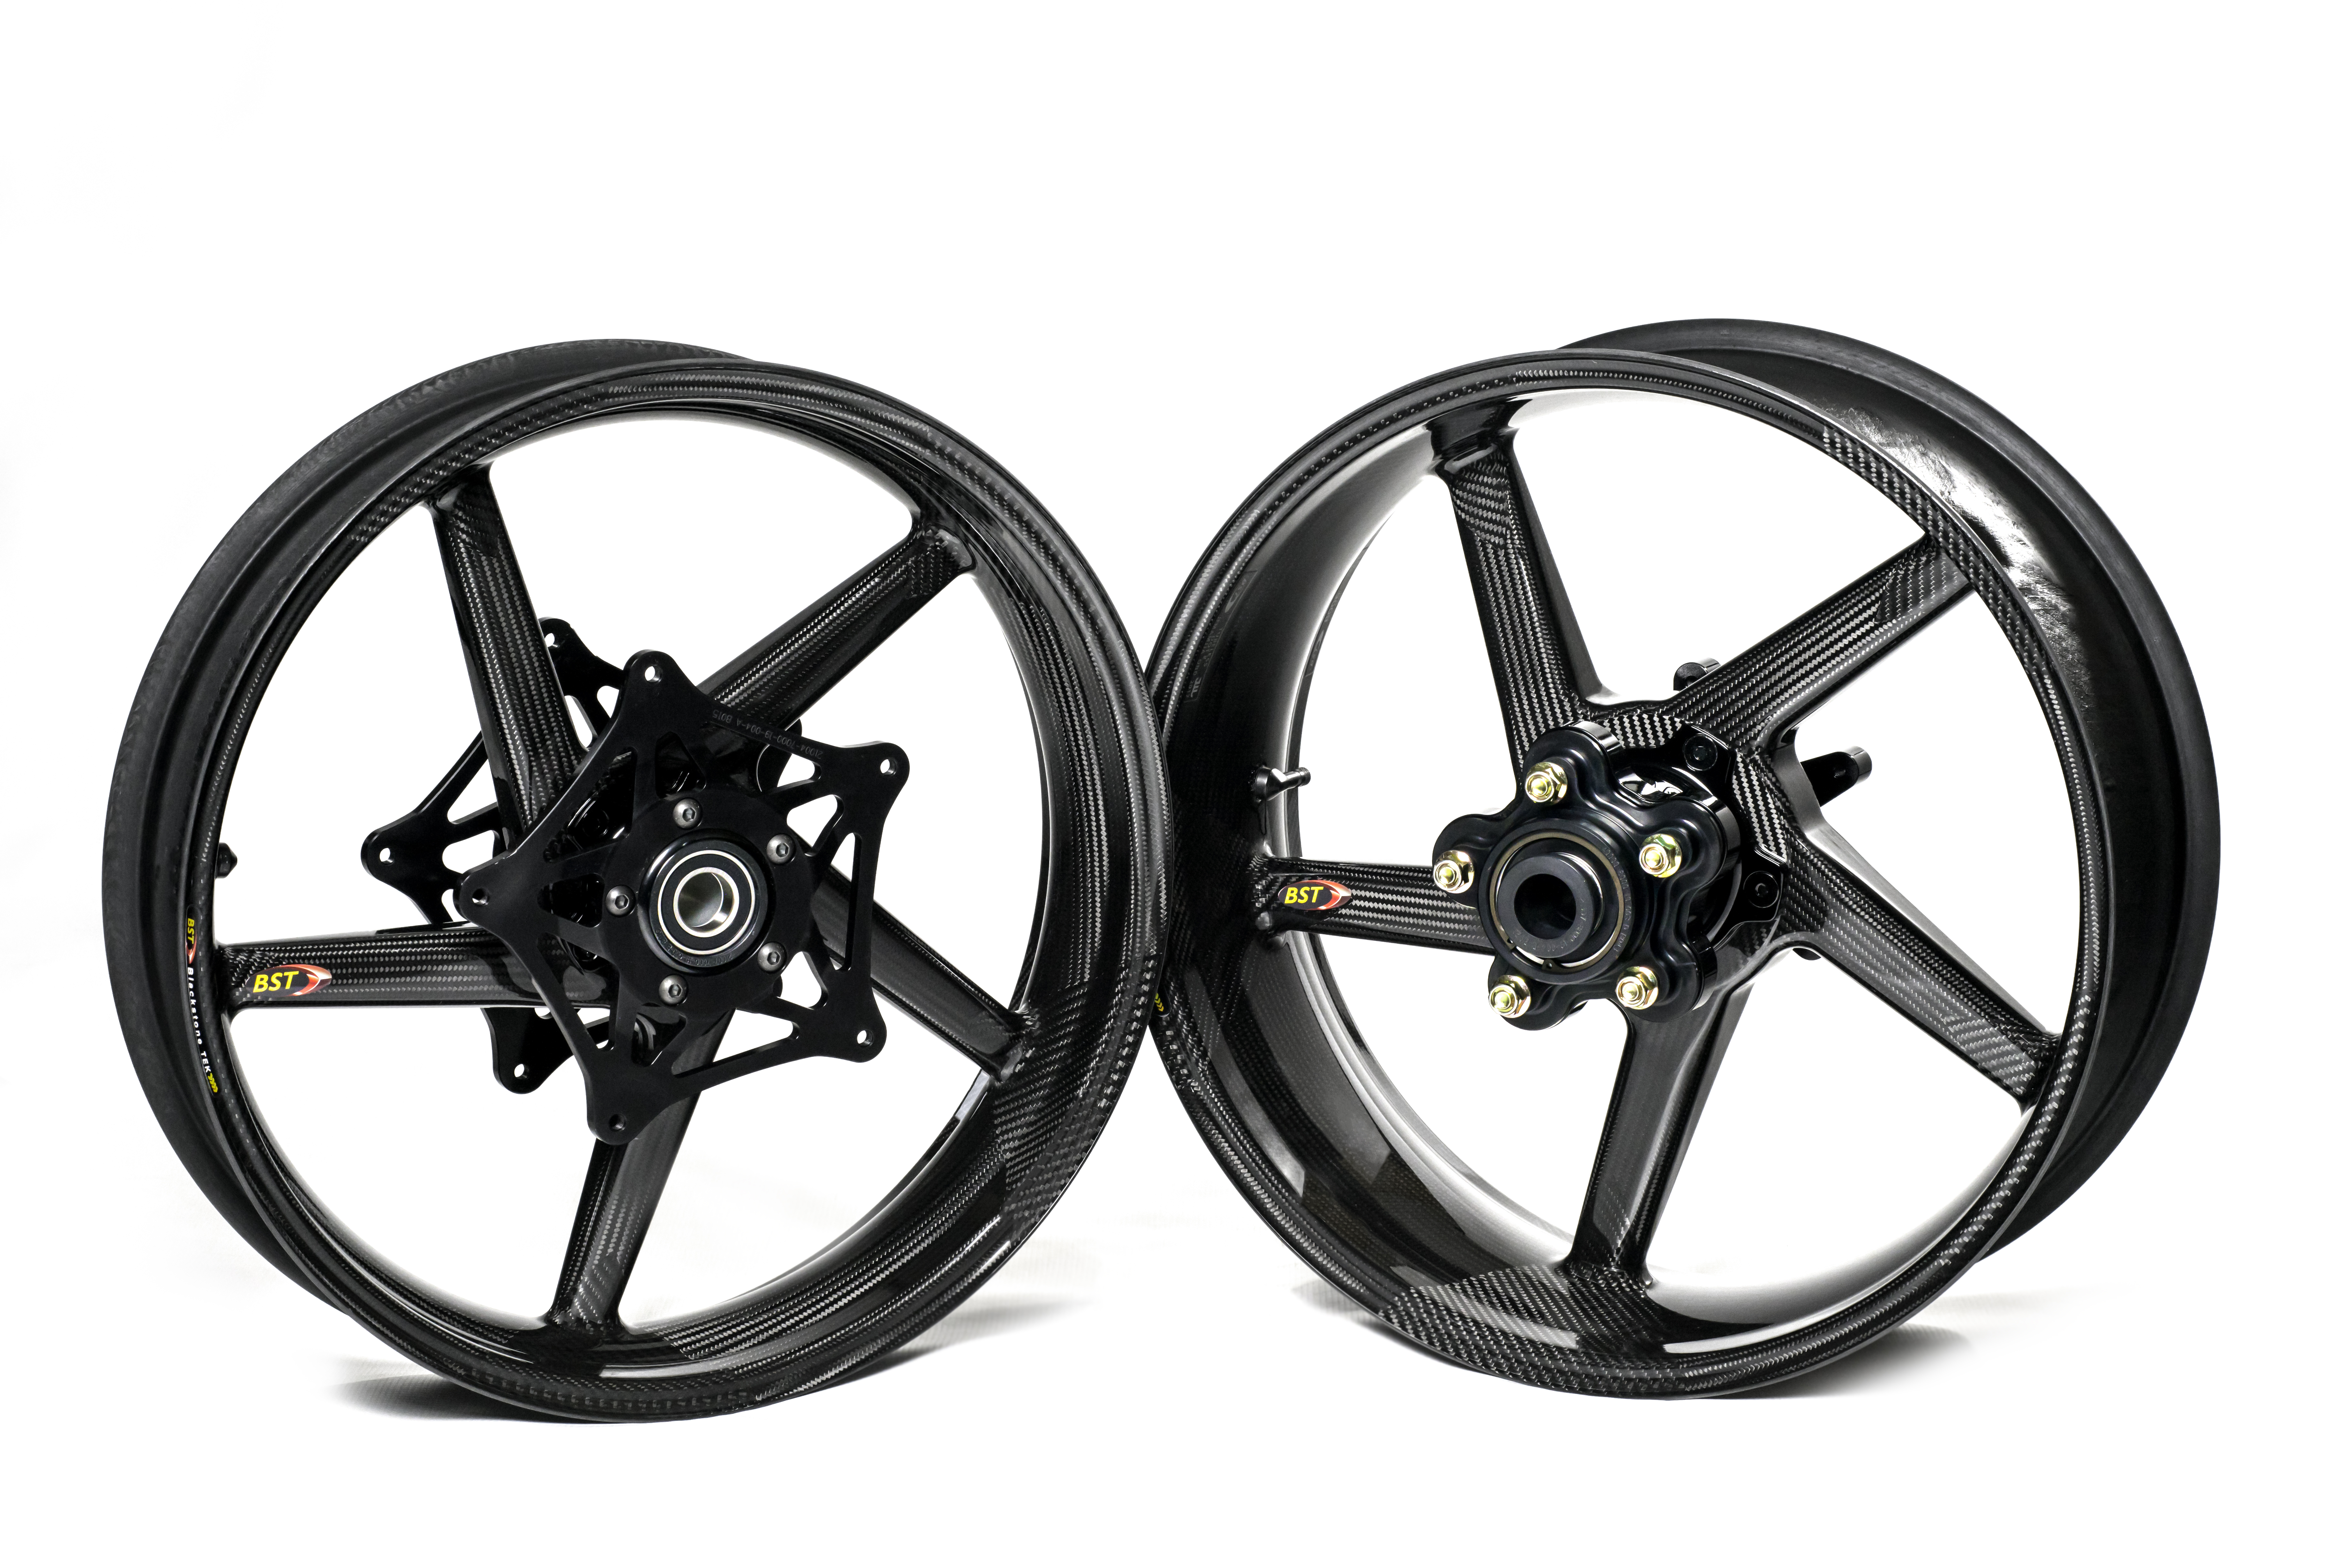 BST Diamond TEK 5 Spoke Carbon Fiber Front Wheel for the Ducati Monster 696 and 795 - 3.5 x 17